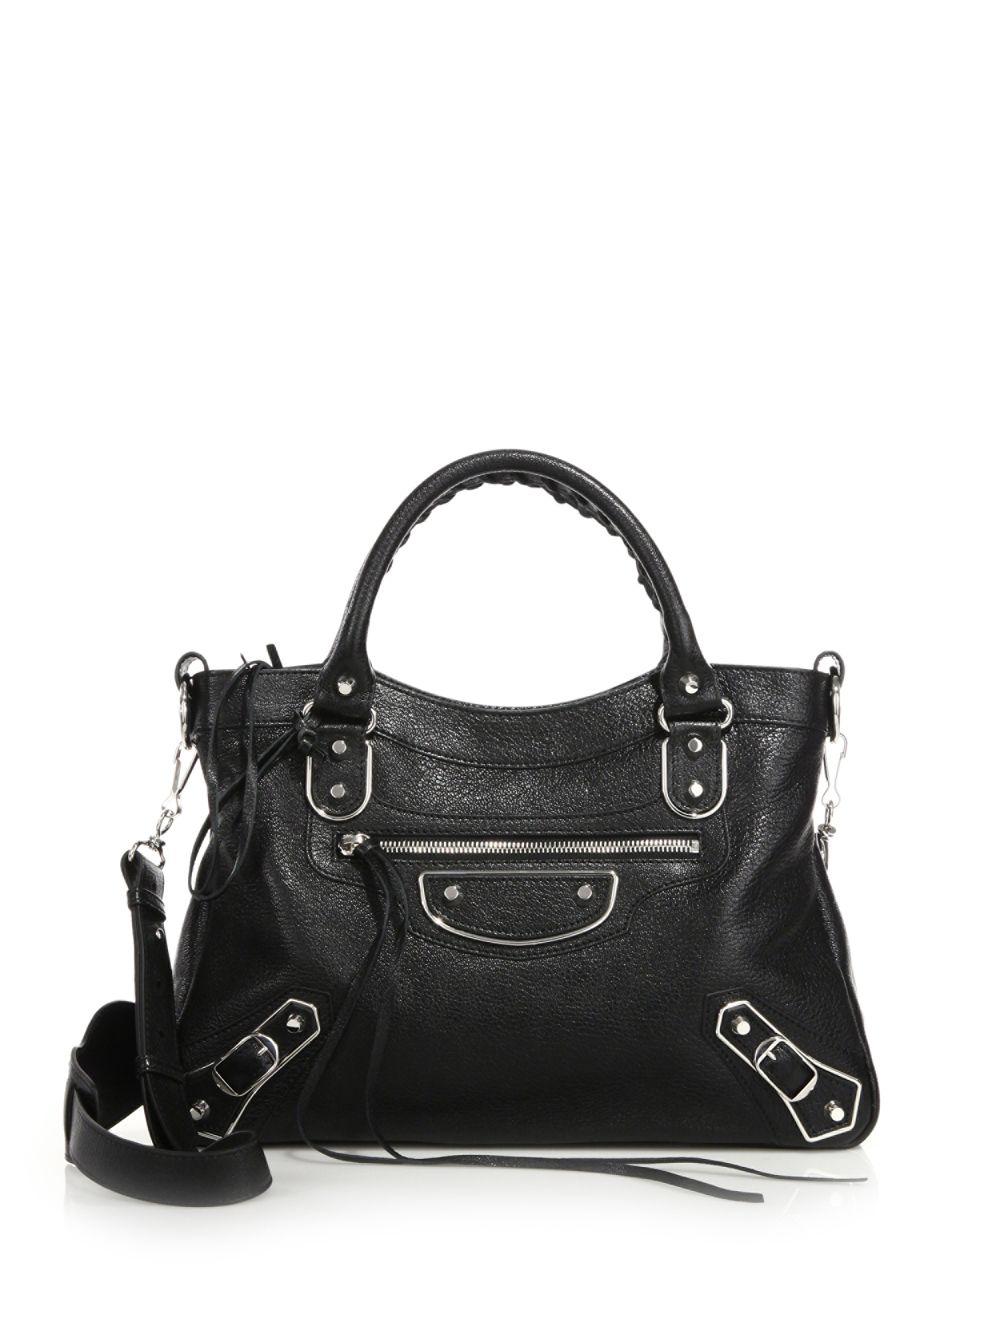 Balenciaga Leather Classic Metallic Edge Town Bag in Black | Lyst